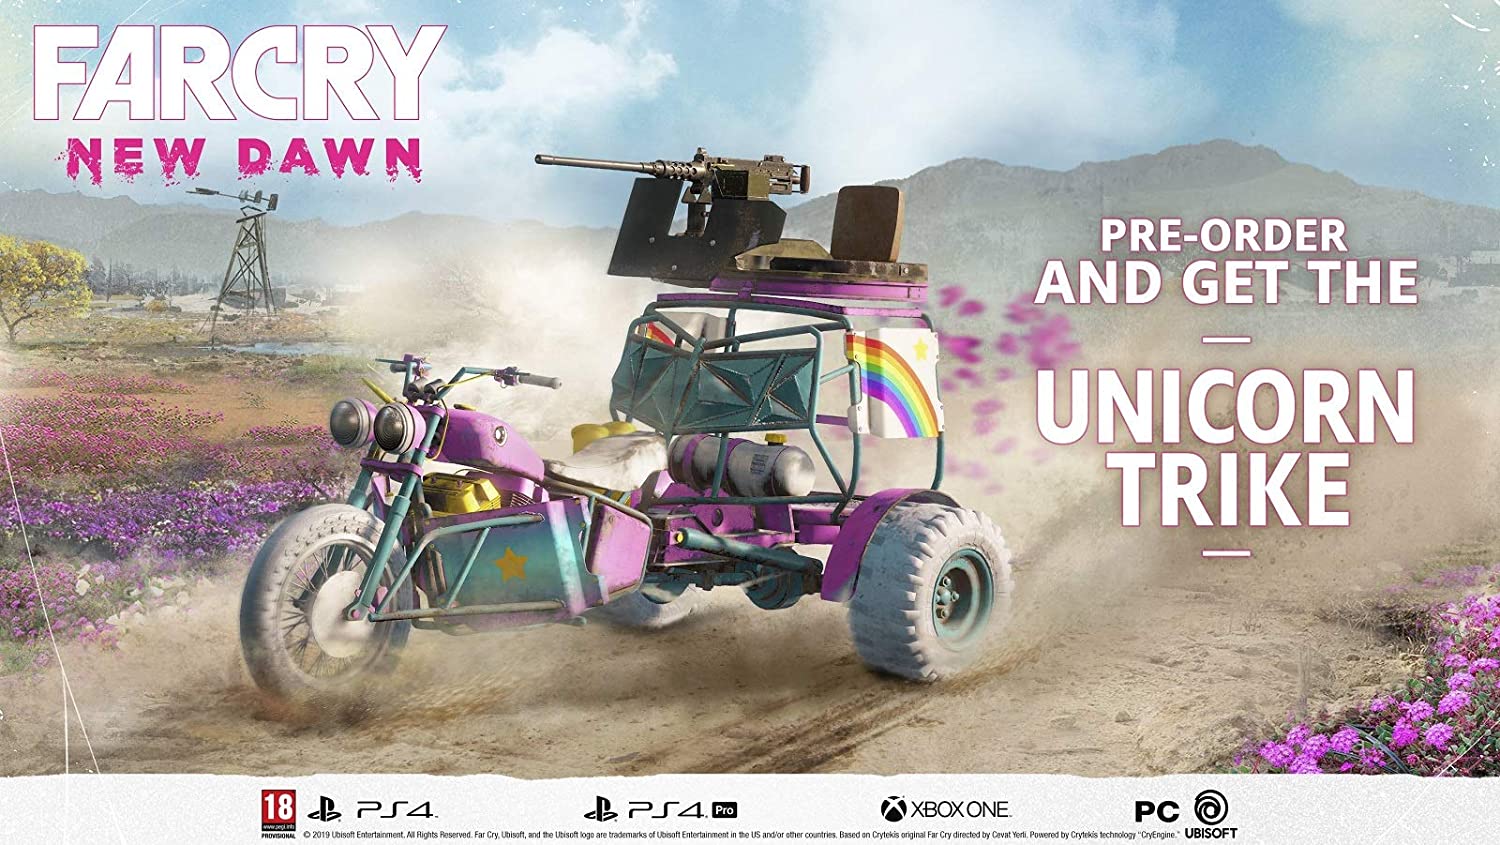 UBI Soft Far Cry New Dawn PS4-Games-dealsplant